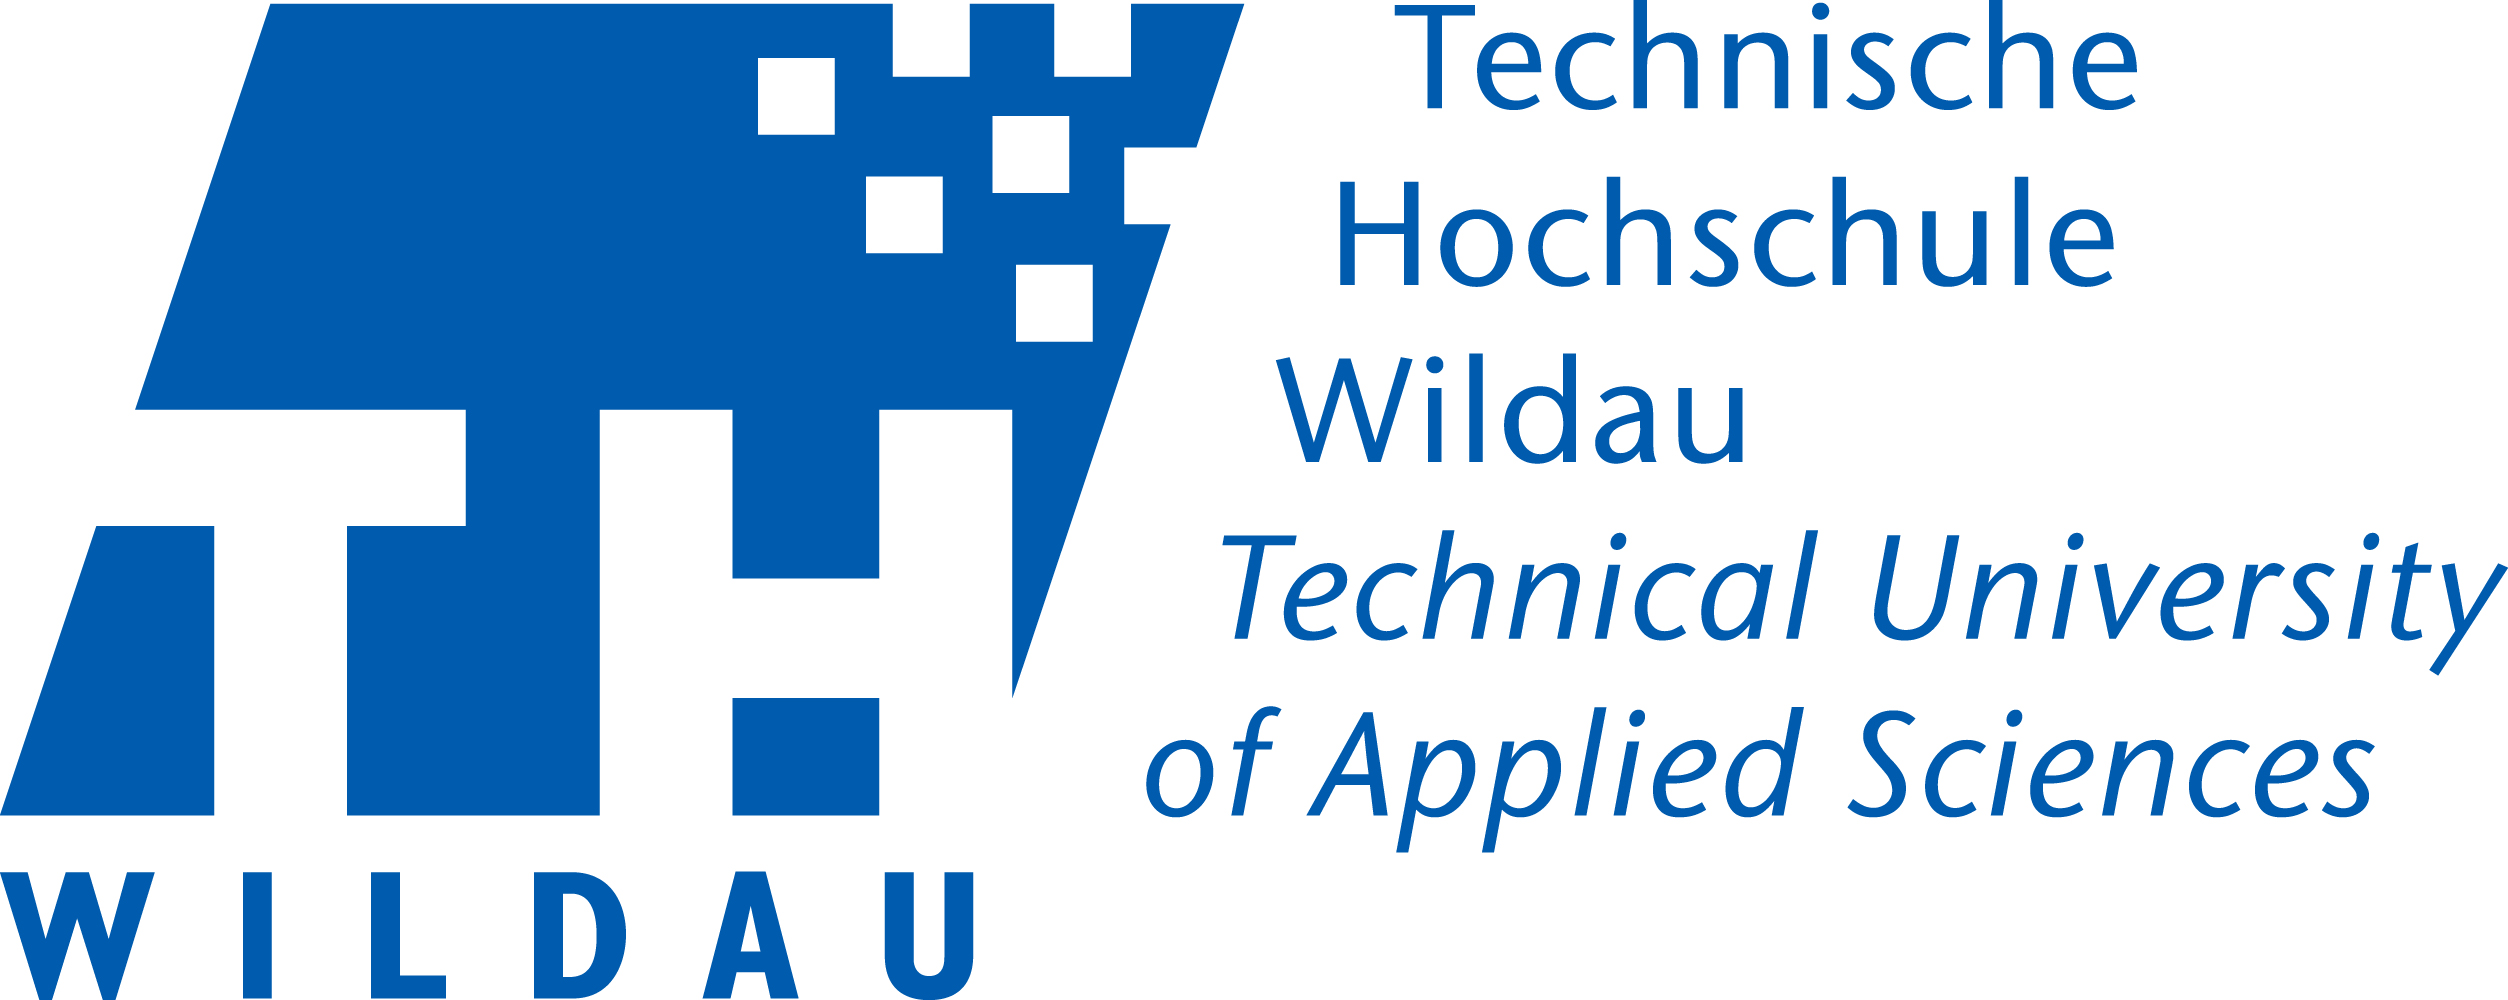 Technische Hochschule Wildau Logo